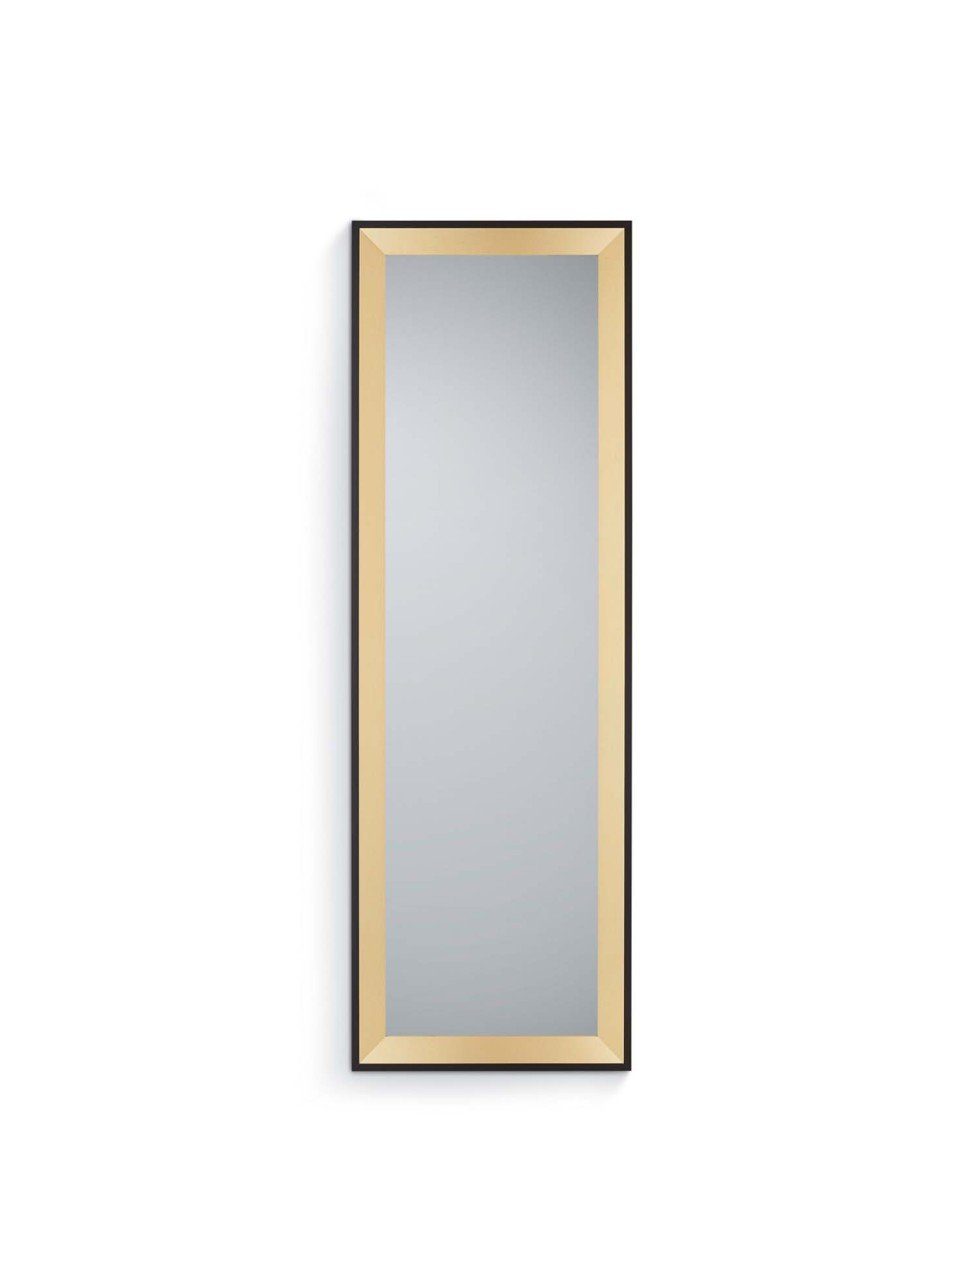 Rahmenspiegel Schwarz-Gold schwarz/goldfarben -Gold AND Spiegel | MIRRORS Branda MORE